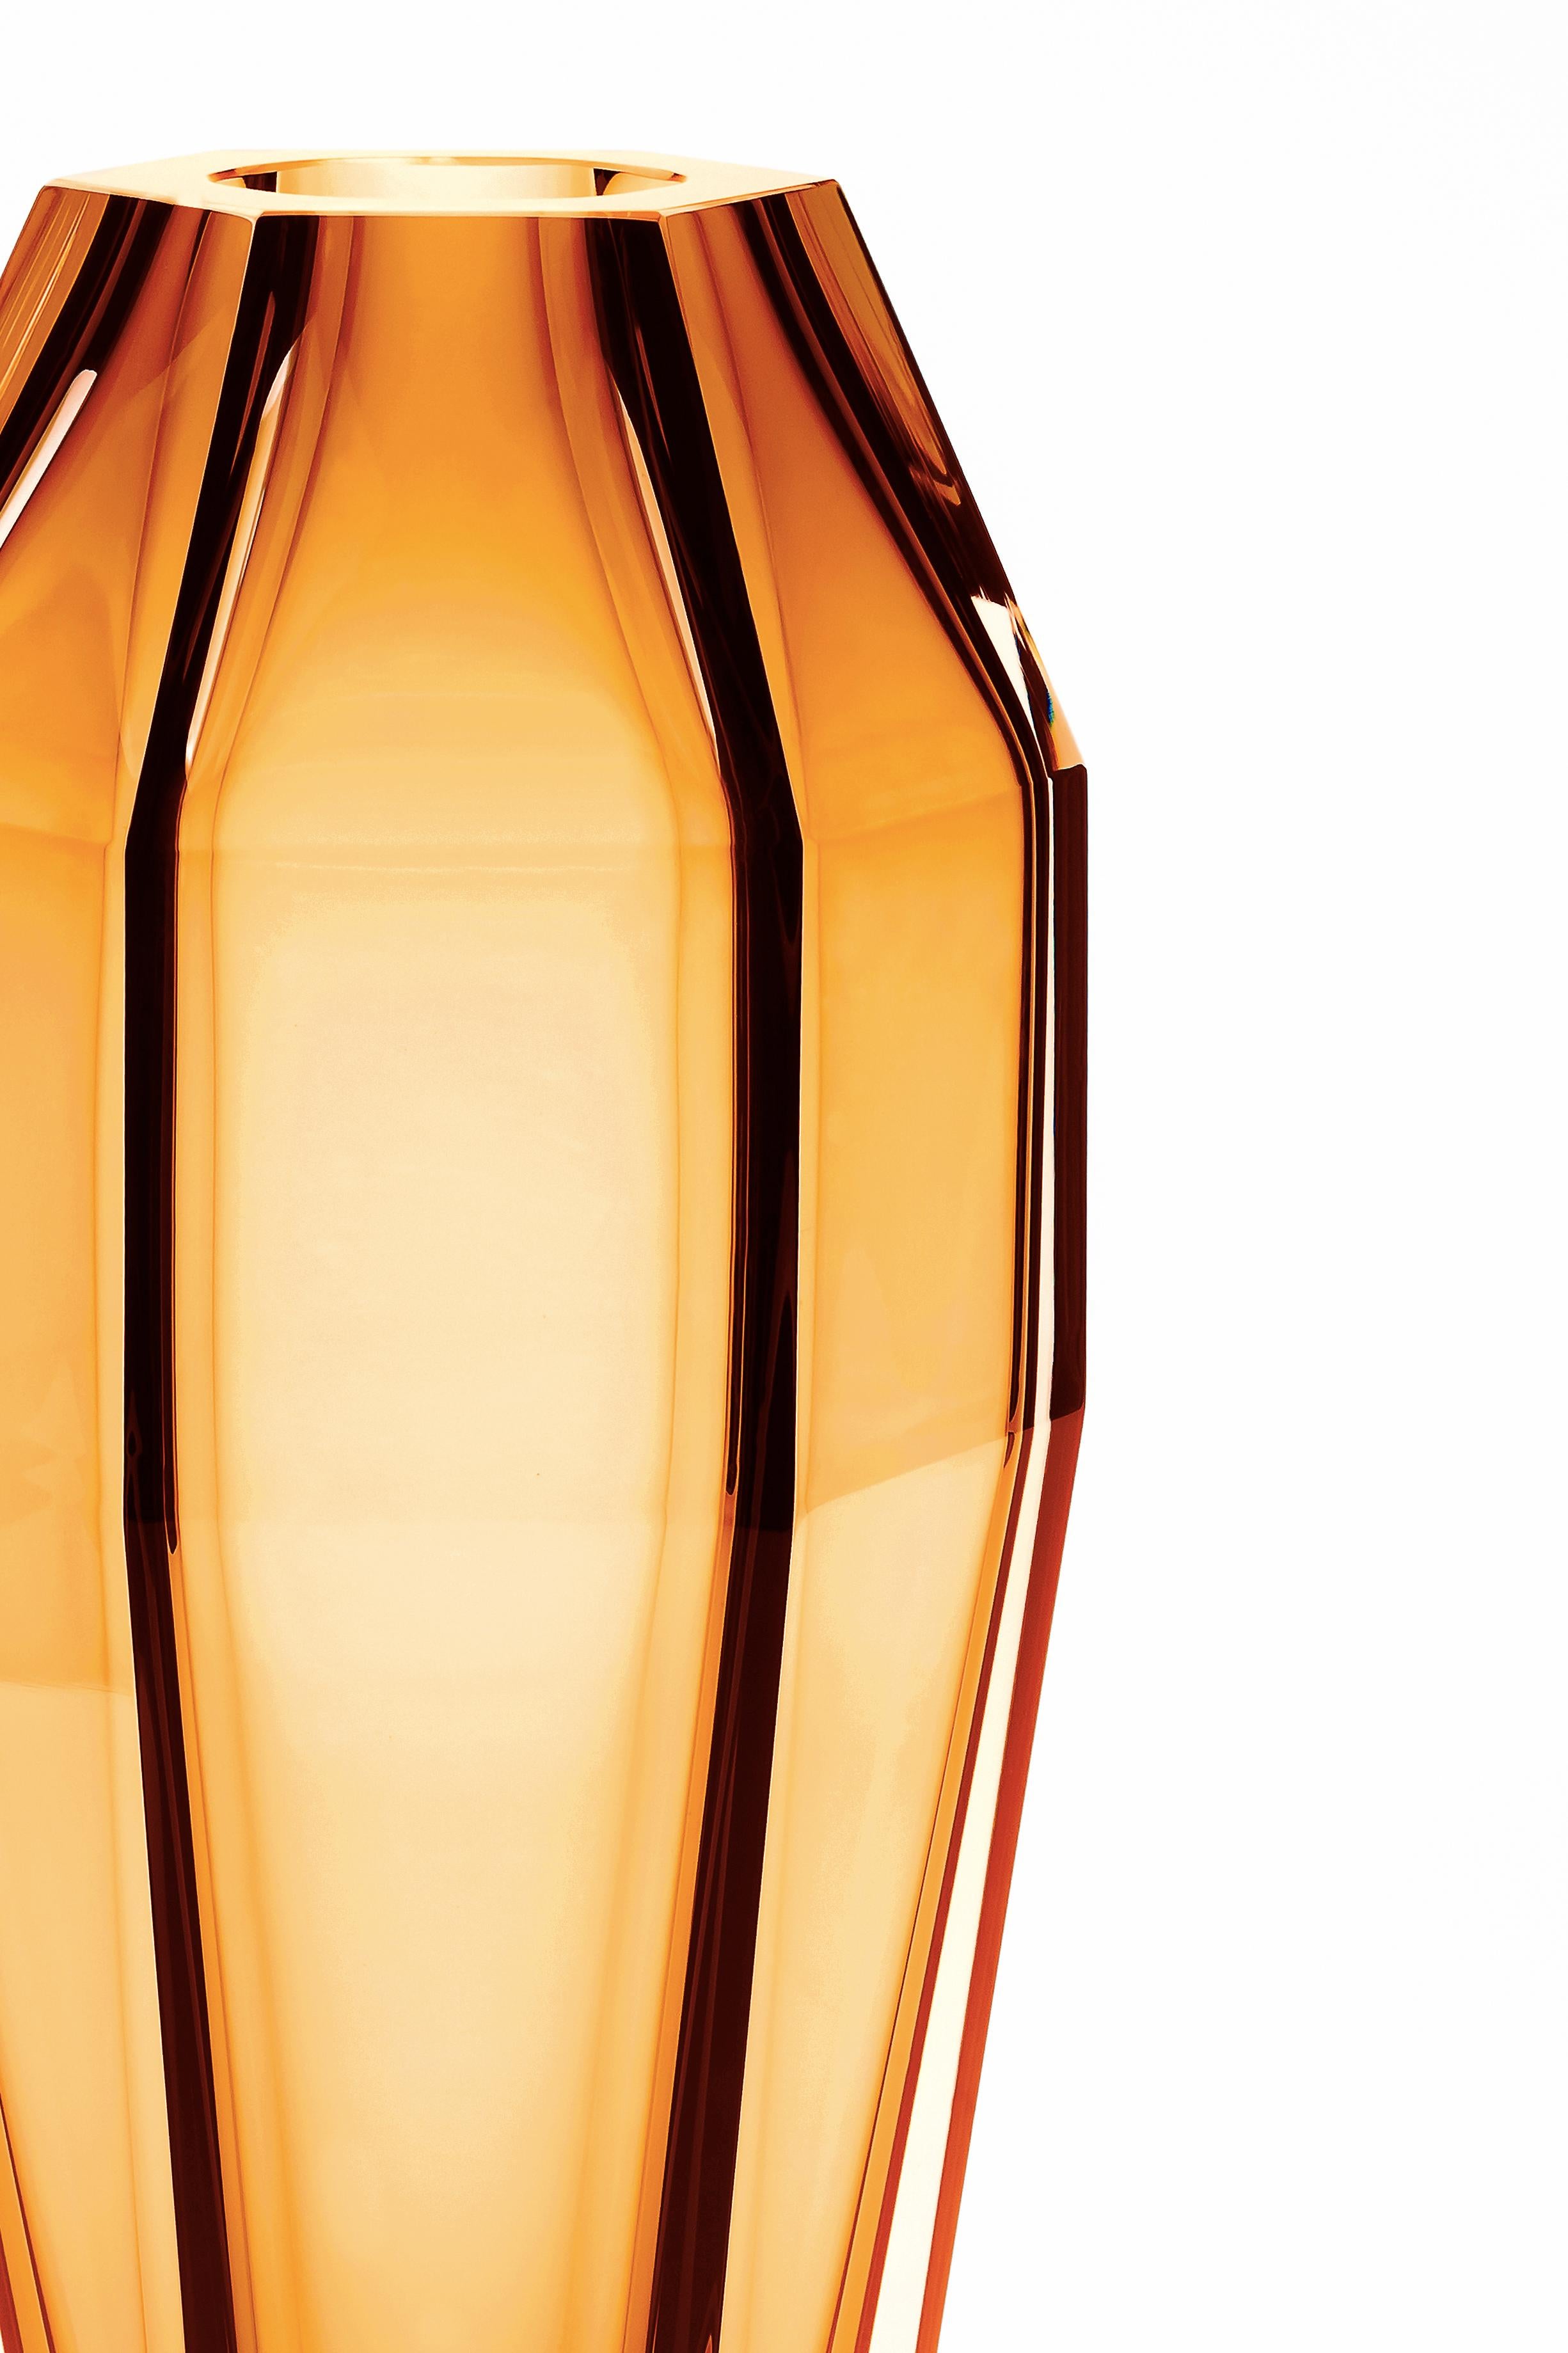 21e siècle Alessandro Mendini, vase transparent GEMELLO, verre de Murano.
Purho poursuit sa recherche de produits aux formes complémentaires avec la paire de vases Gemello et Gemella conçus par Alessandro Mendini. Partageant le même concept de